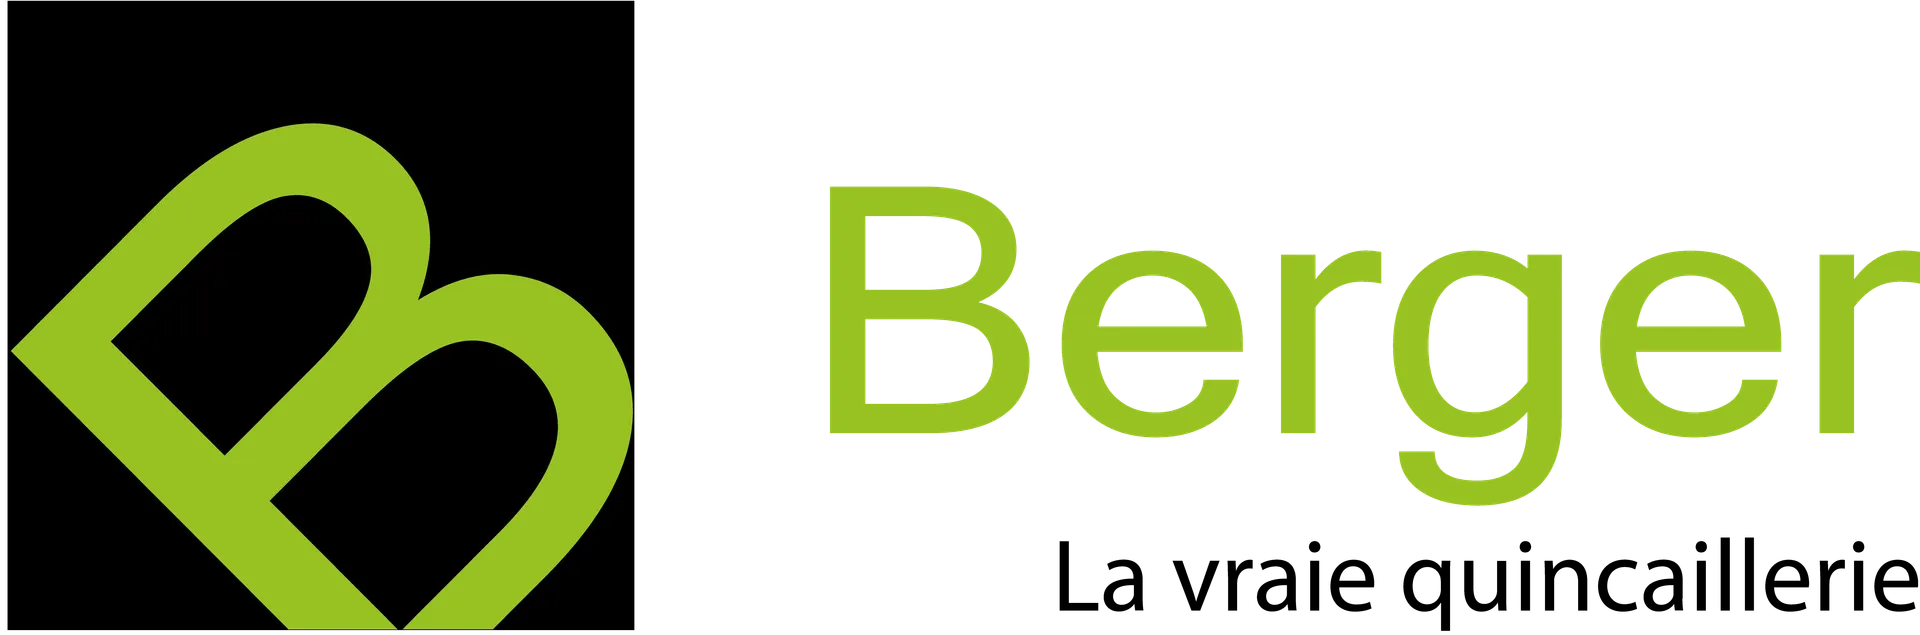 QUINCAILLERIE BERGER logo de circulaires